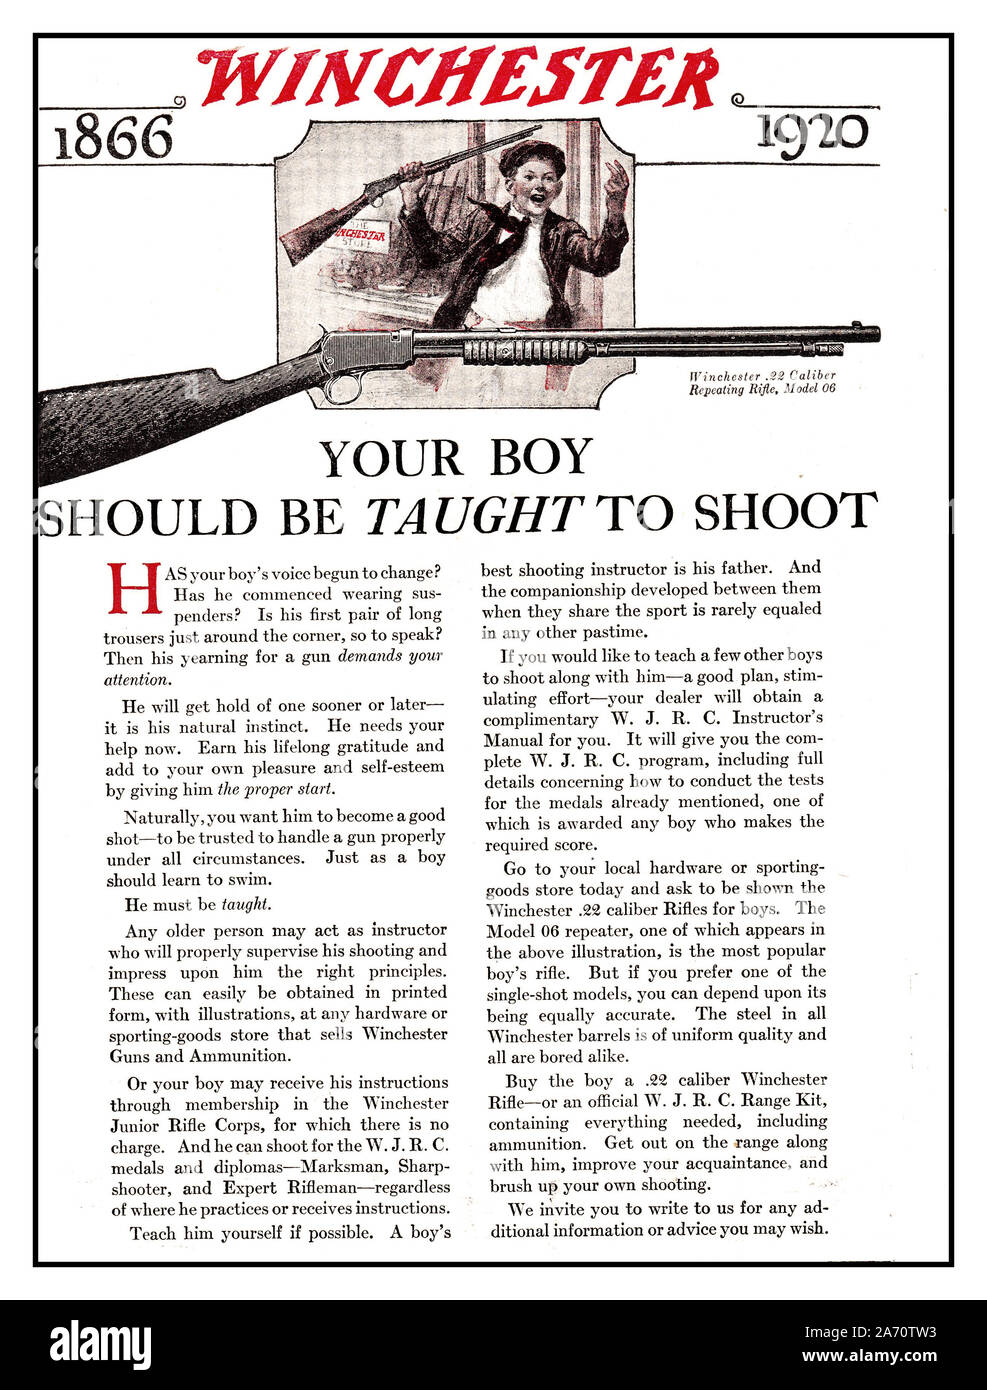 Vintage American 1920, das 'Winchester Gewehr" Magazin Werbung Förderung der Aus- und Weiterbildung einen Sohn zu lernen, zu schießen. "Ihr Junge sein sollten unterrichtet zu Shoot 'Winchester USA 1866-1920 Gun Kultur Erbe in Amerika Stockfoto